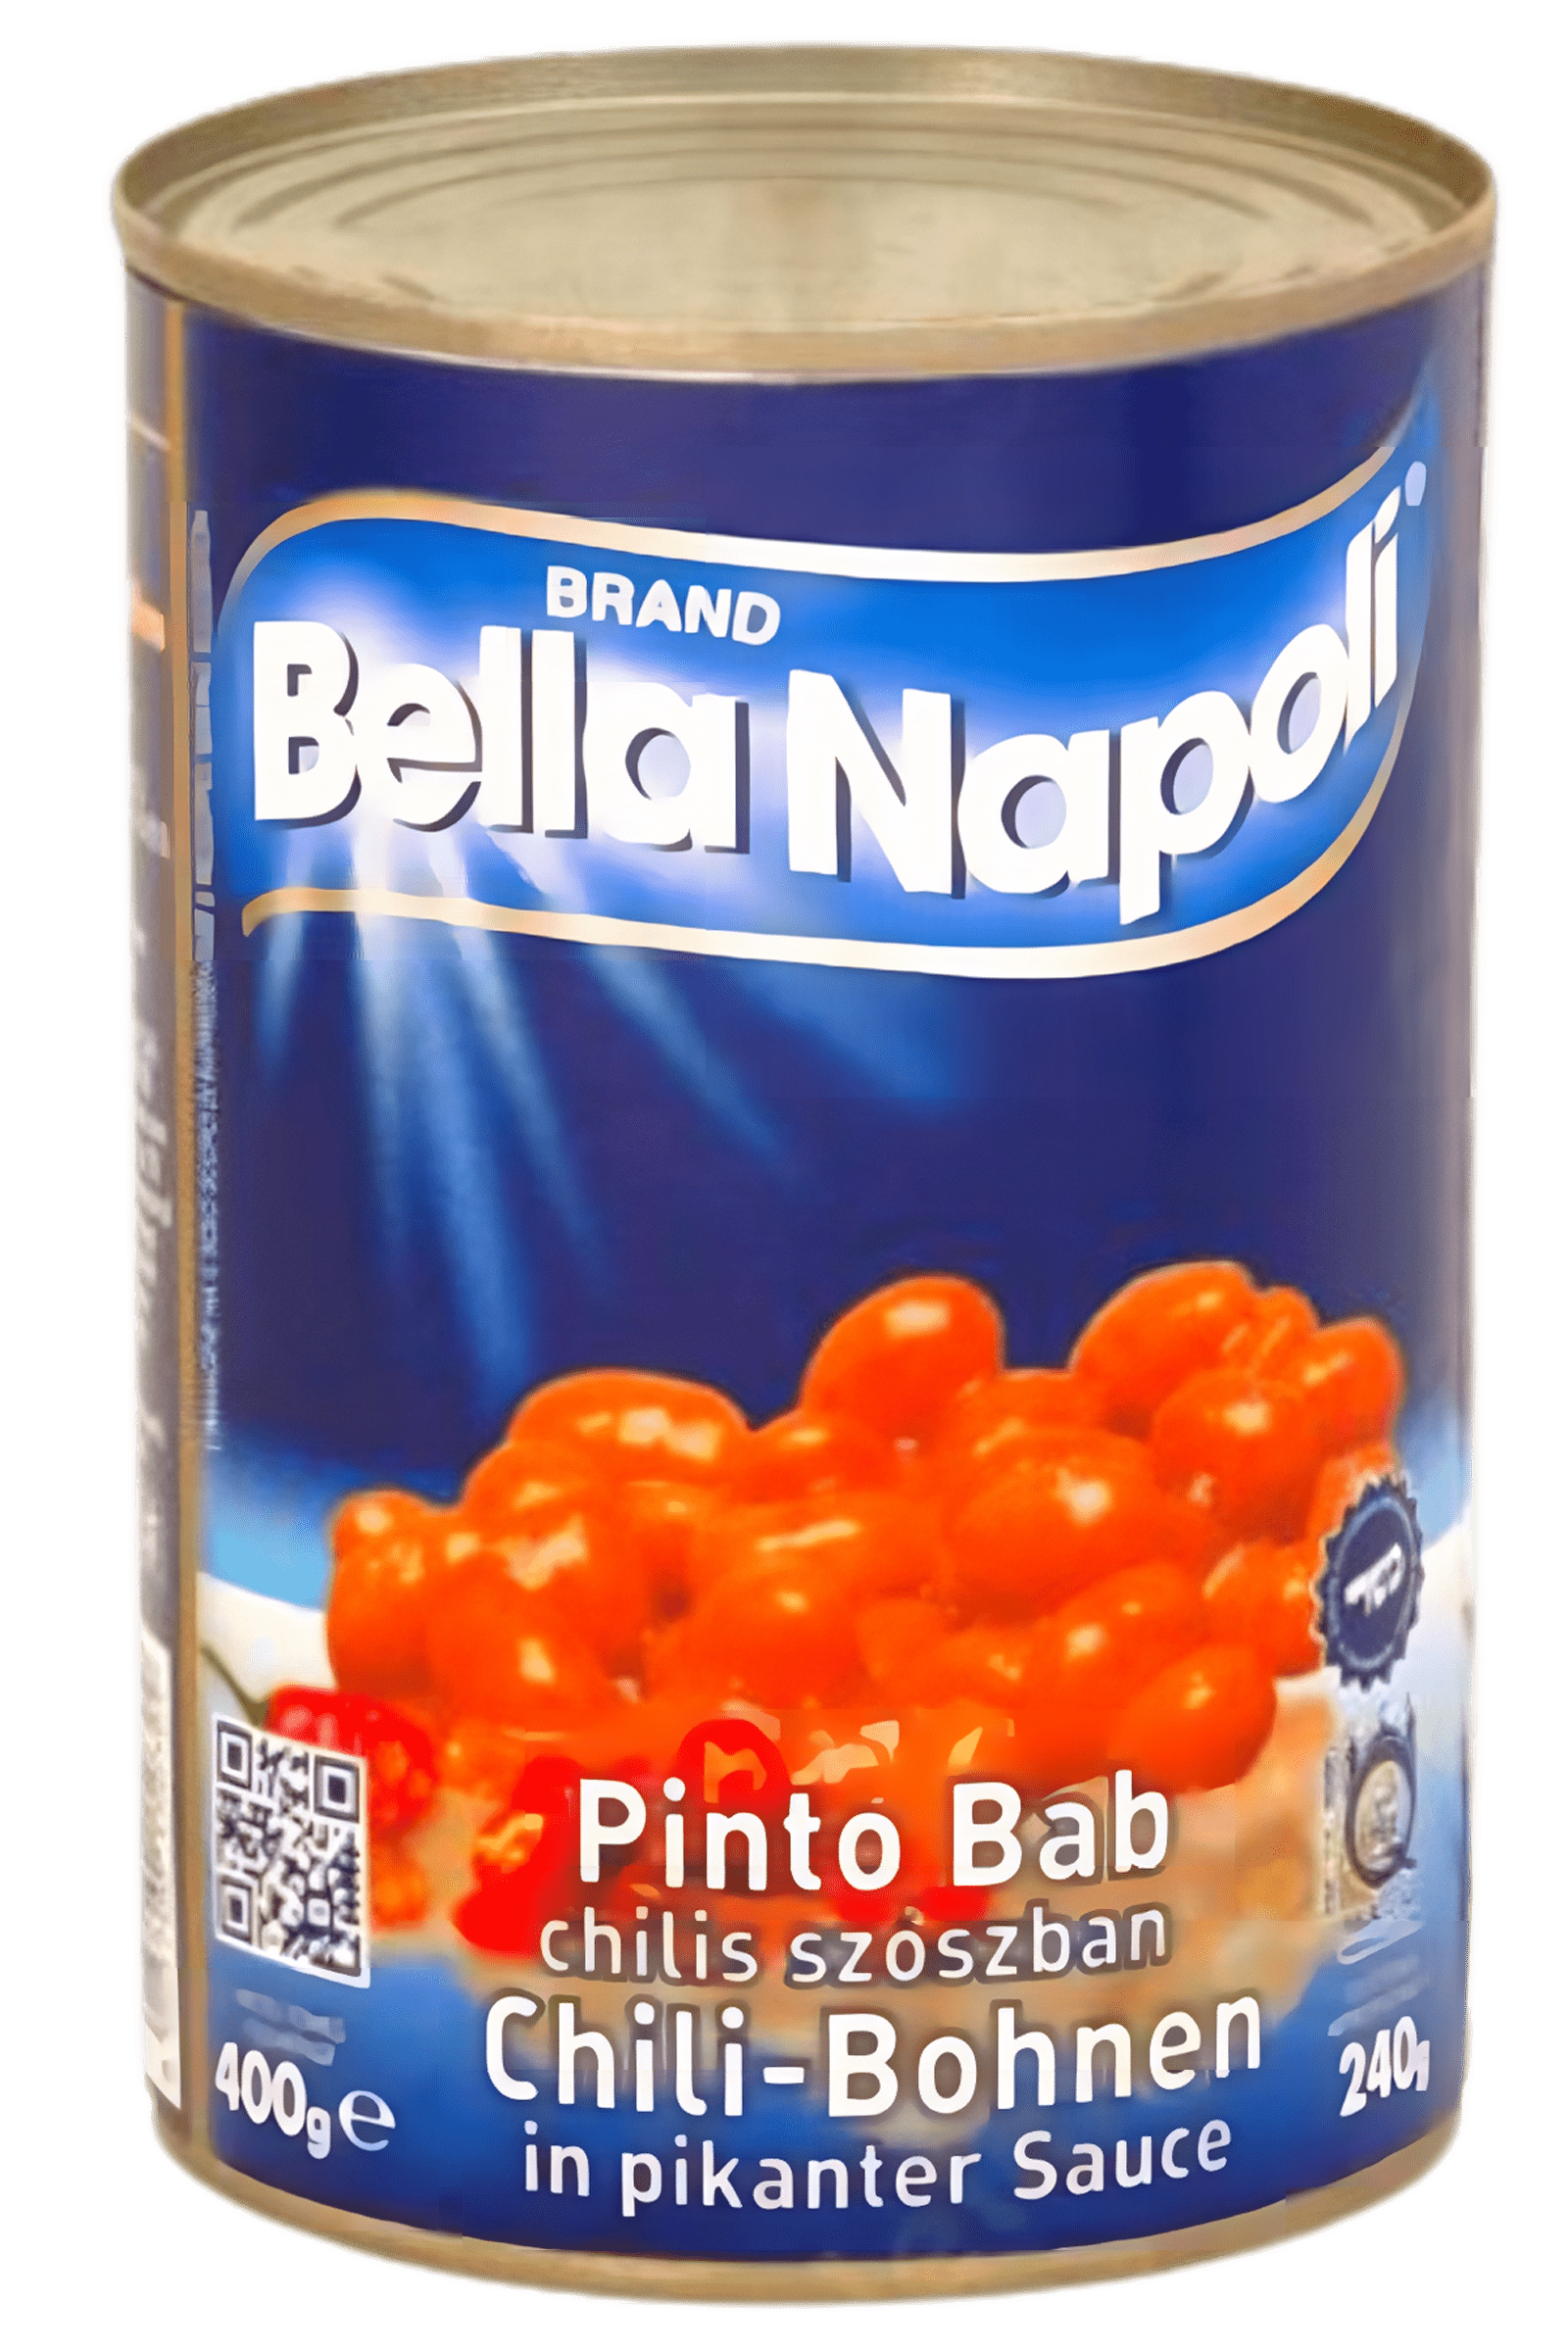 .Bella Napoli pinto bab chilis 400g